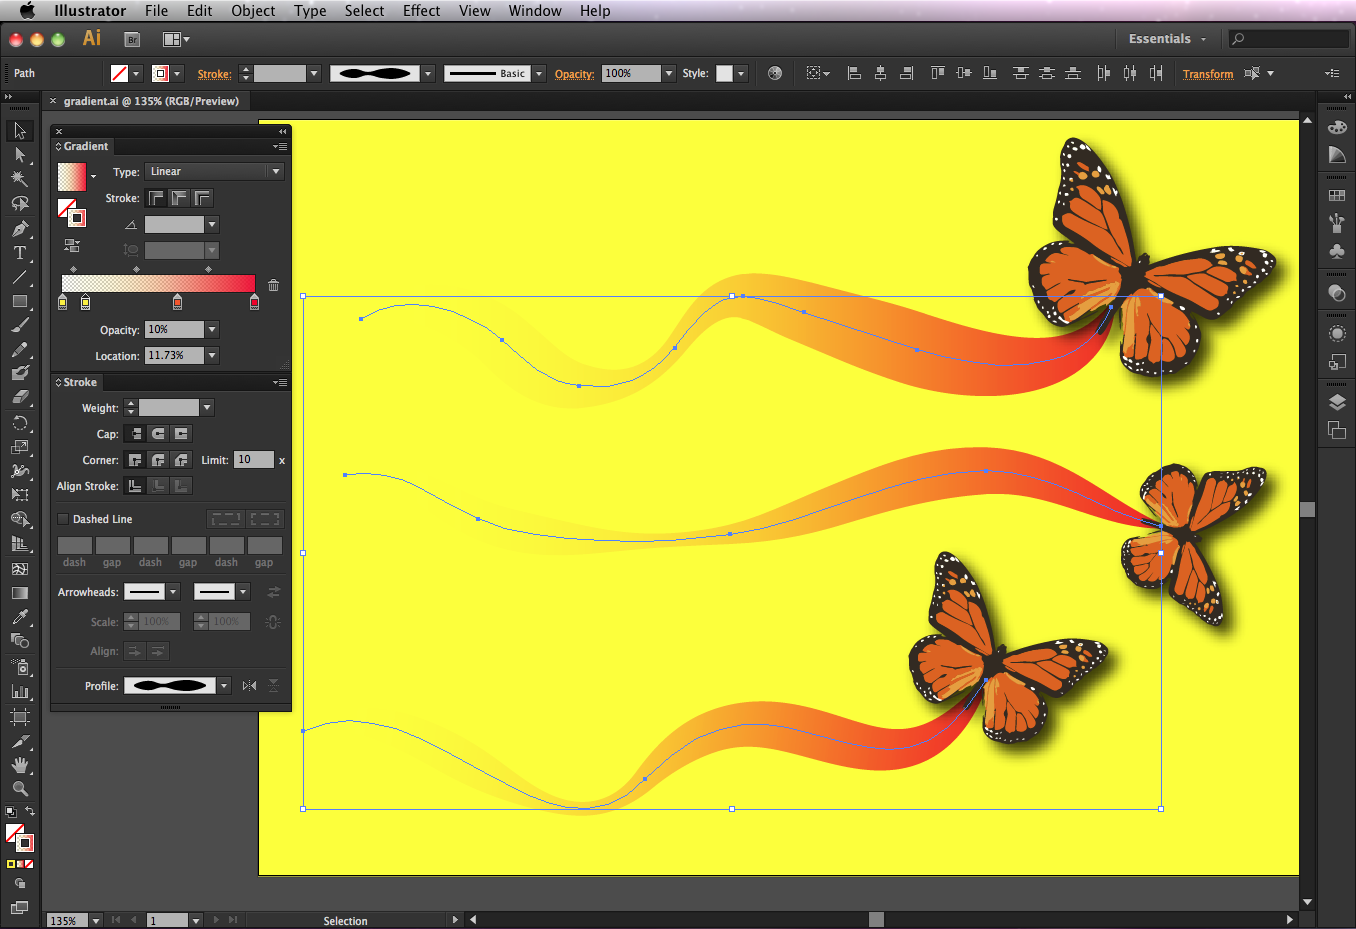 Adobe Illustrator Cs6 Download Mac Trial